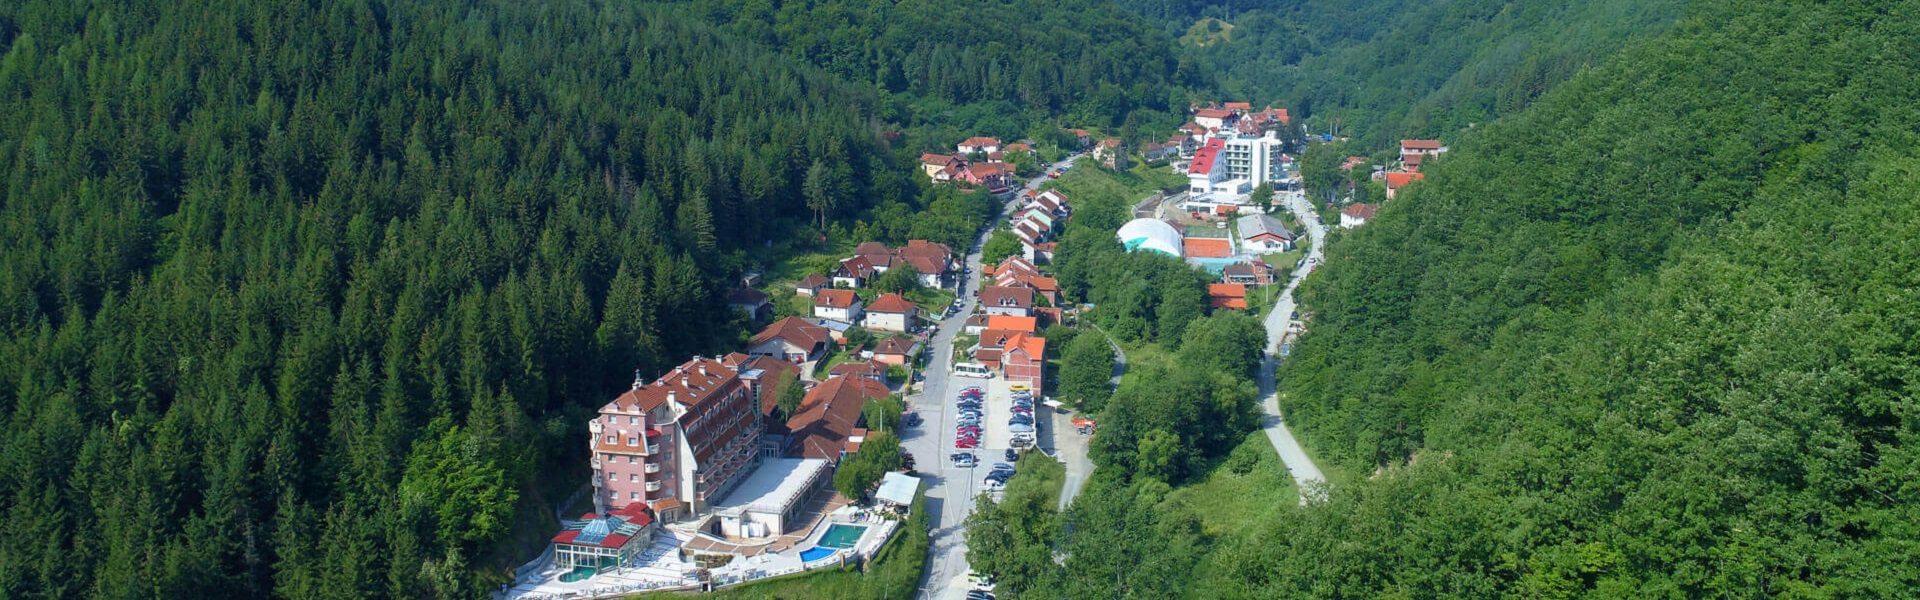 Iznajmljivanje kombija | Lukovska banja u Srbiji